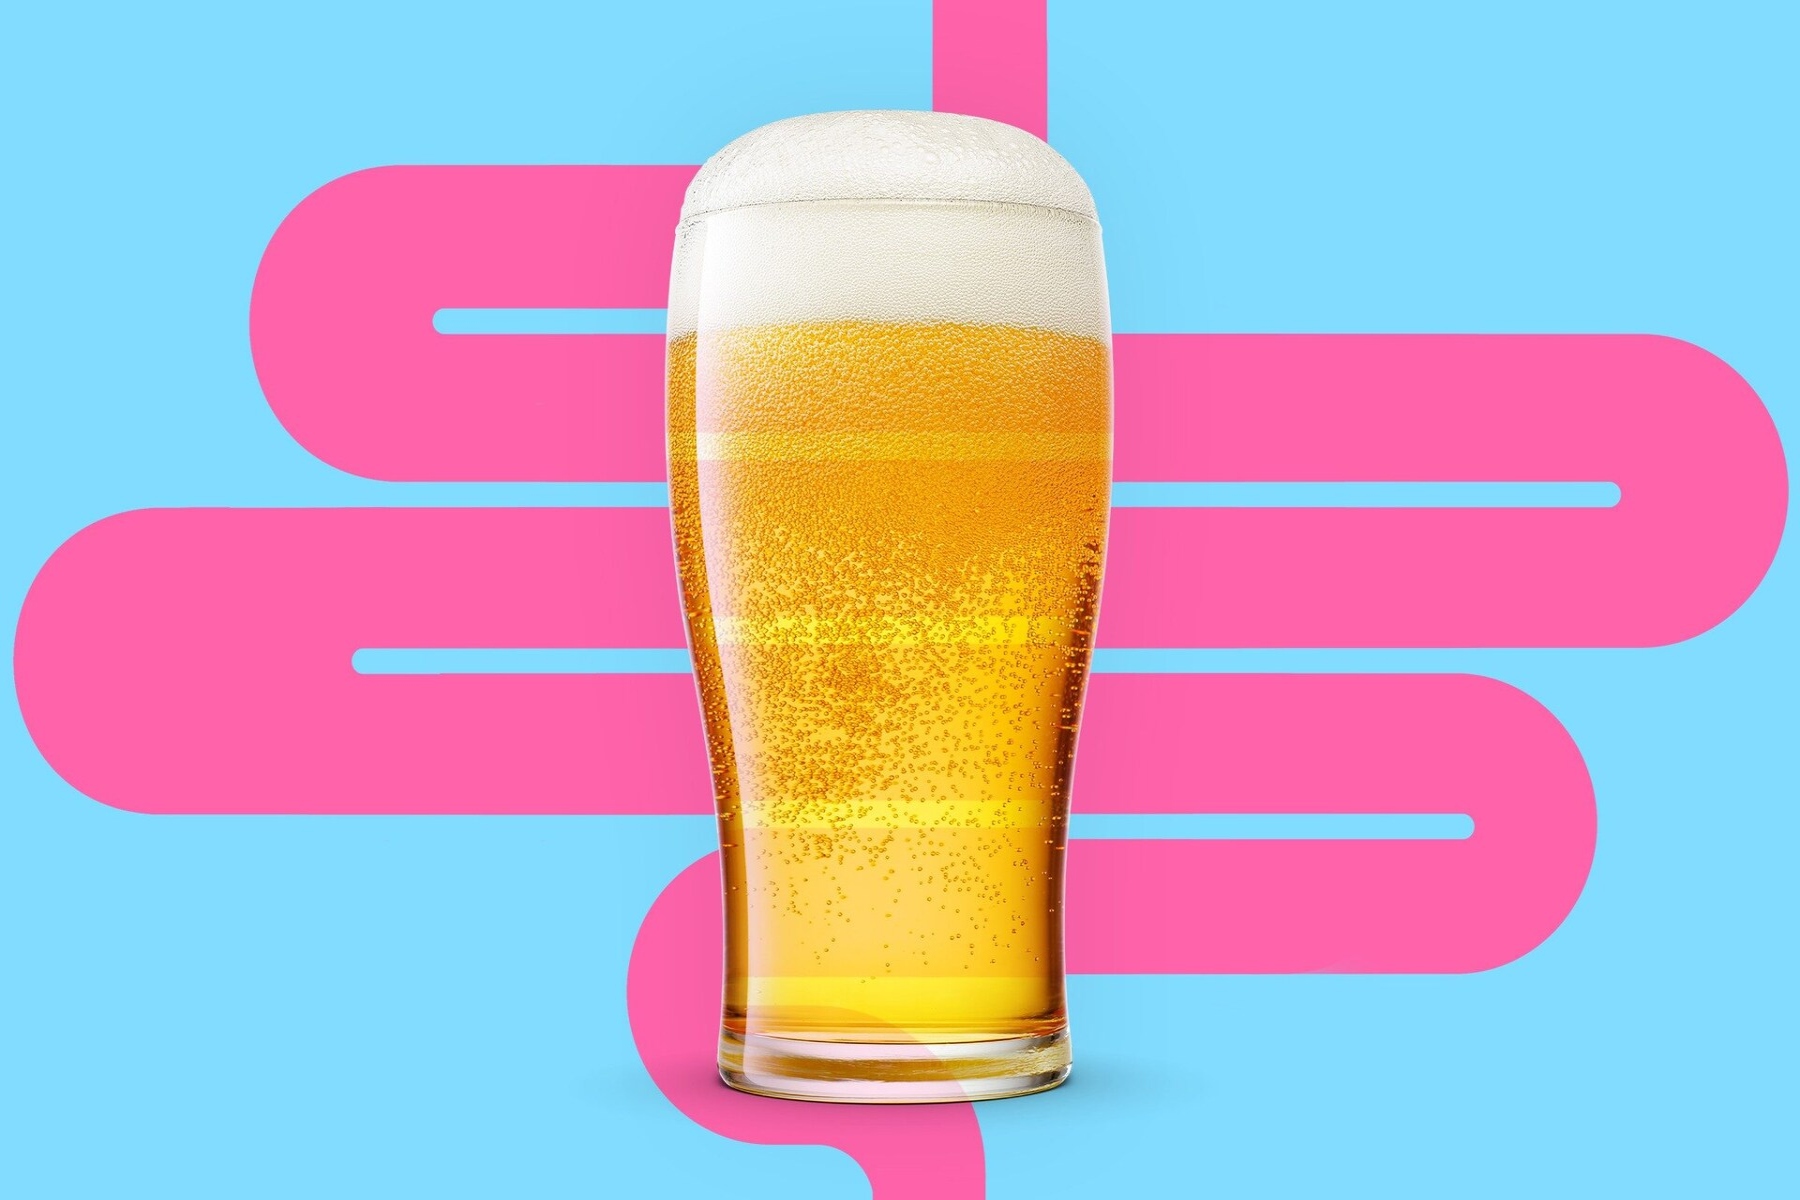 Μπύρα ανοσοποιητικό: Απροσδόκητα νέα για τους λάτρεις της μπύρας που δεν τους αρέσει να κρυώνουν